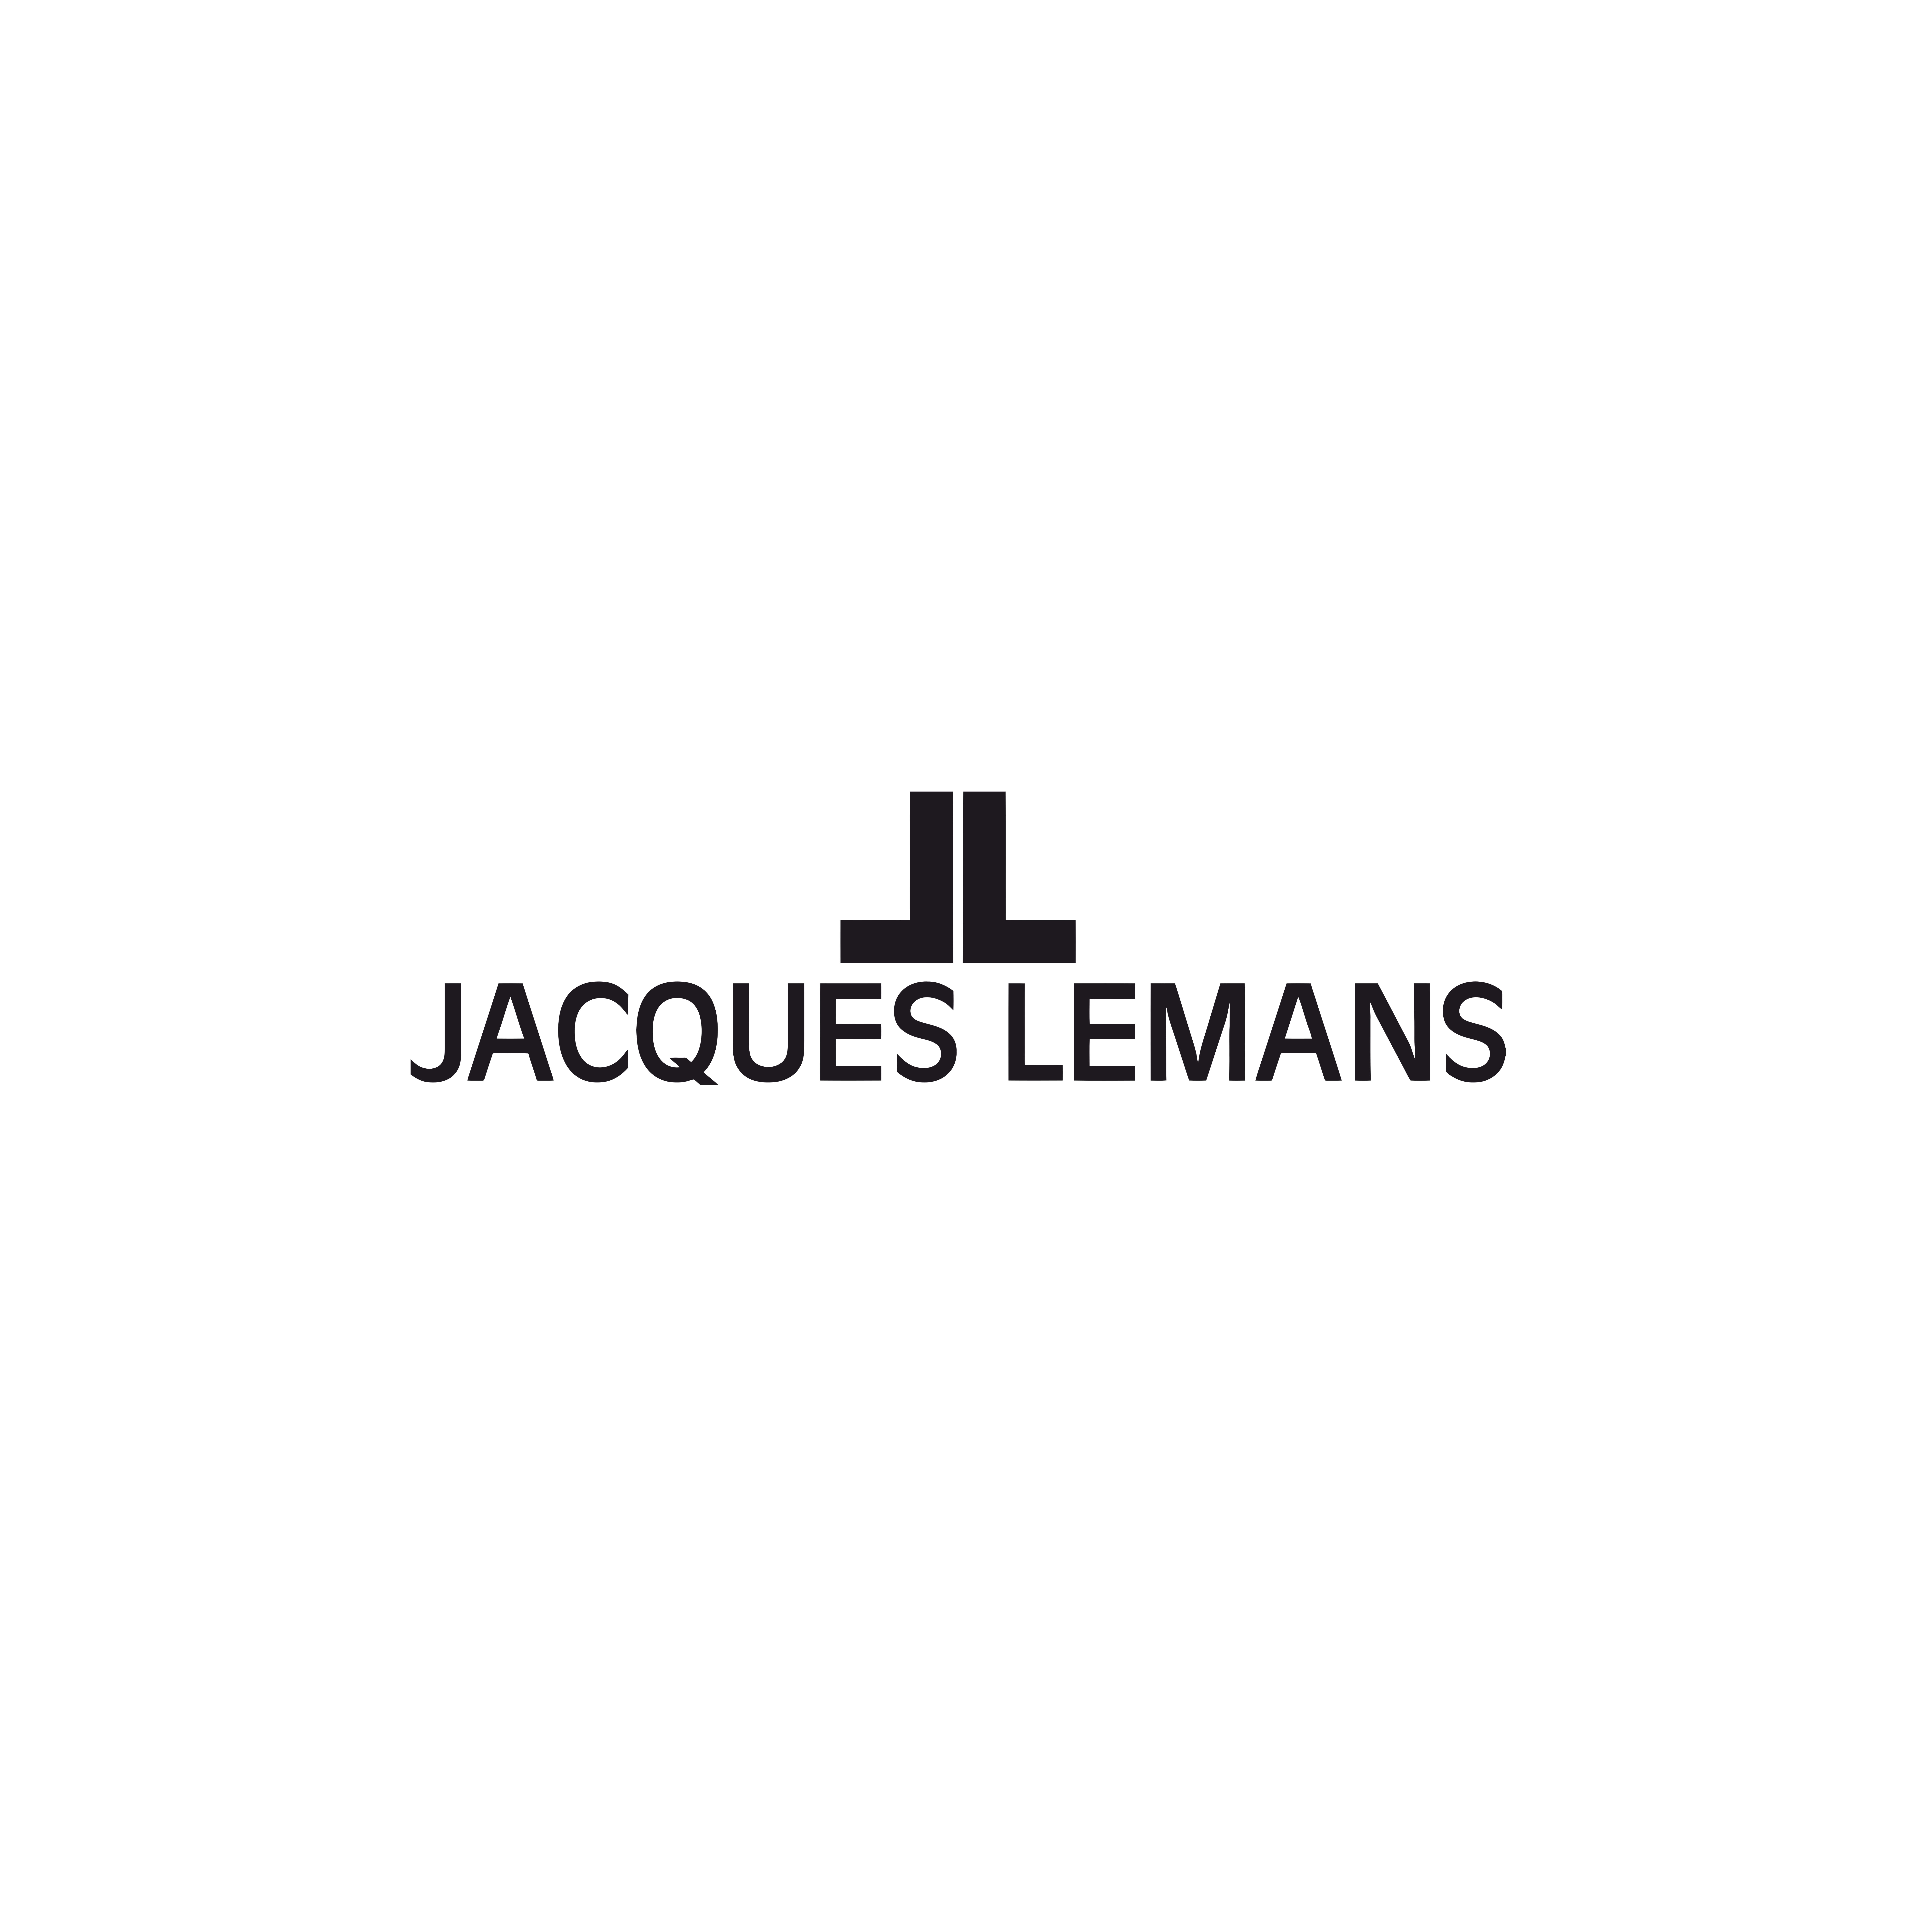 Jacques Lemans logo